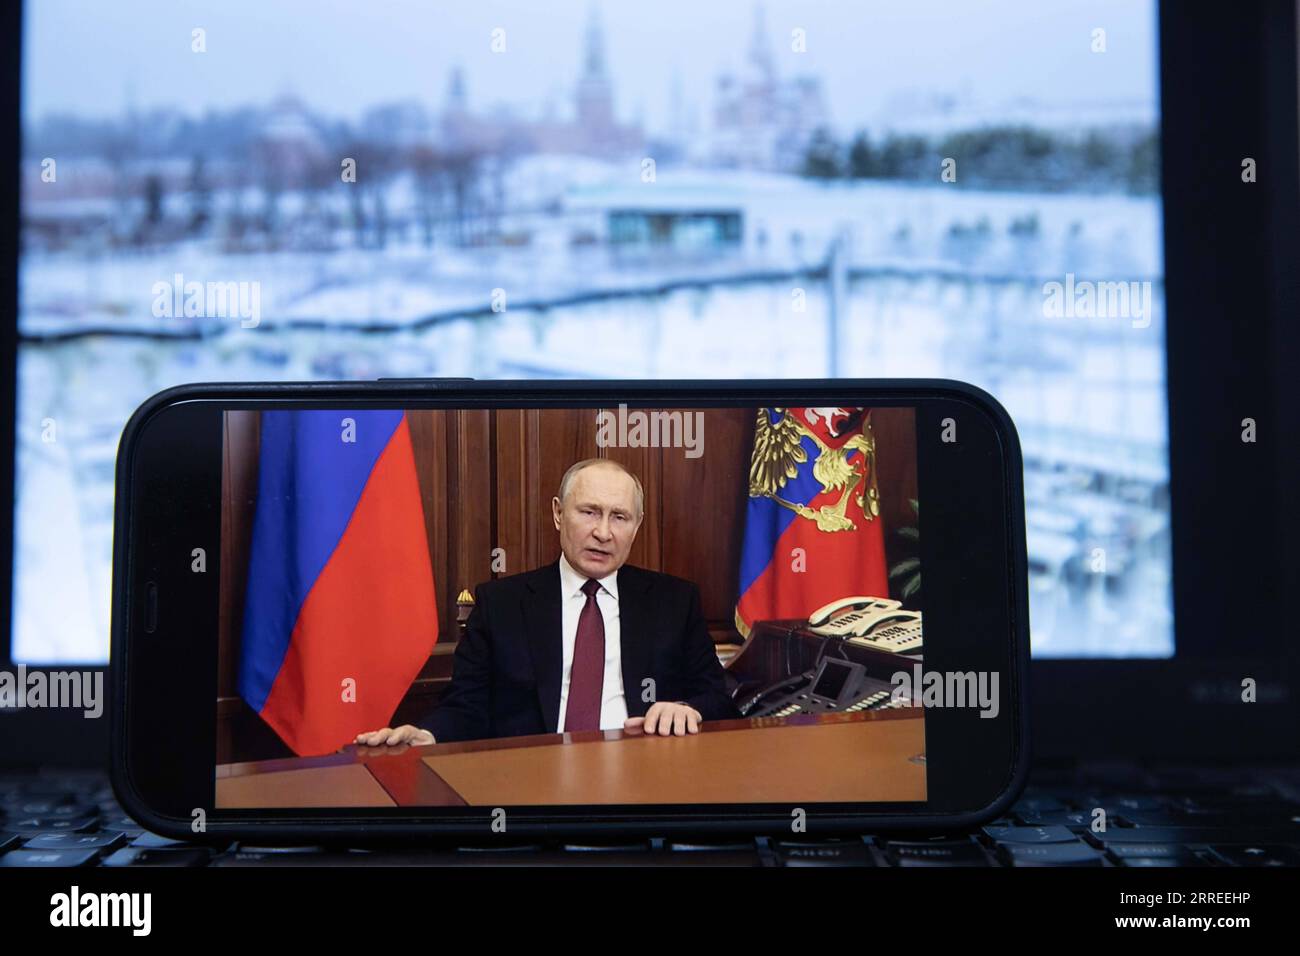 220224 -- MOSCOU, le 24 février 2022 -- une photo prise le 24 février 2022 montre un écran montrant le président russe Vladimir Poutine s'exprimant lors d'un discours télévisé, à Moscou, en Russie. POUR ALLER AVEC Poutine autorise une opération militaire spéciale dans la région du Donbass RUSSIE-MOSCOU-POUTINE-ADRESSE TÉLÉVISÉE BaixXueqi PUBLICATIONxNOTxINxCHN Banque D'Images